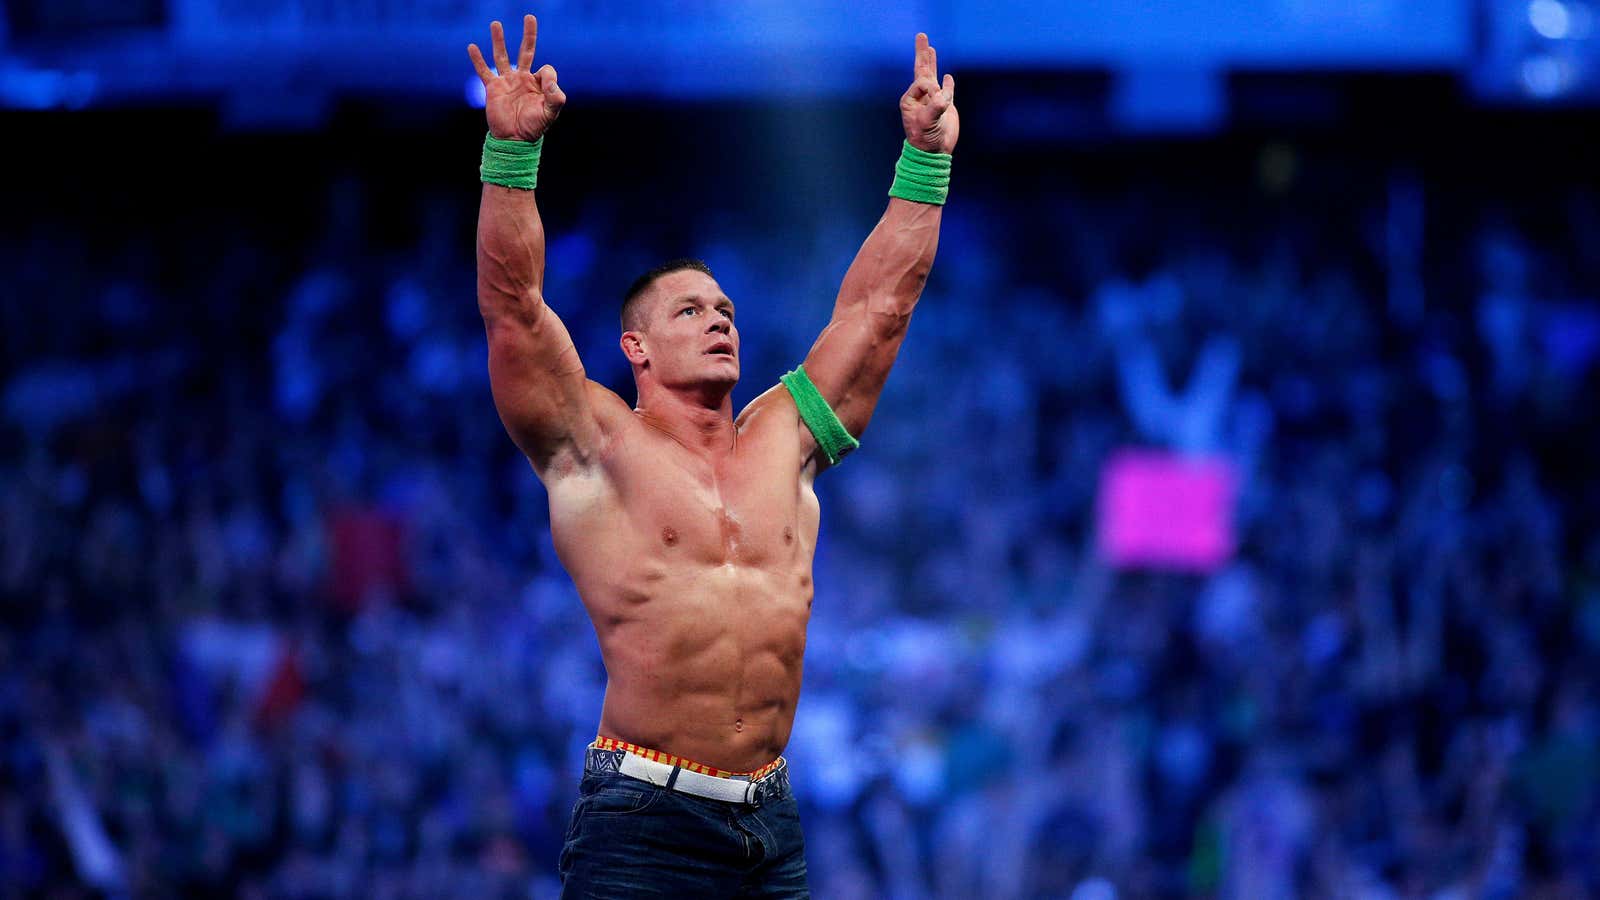 The wrestler John Cena refuses to return to Saudi Arabia.